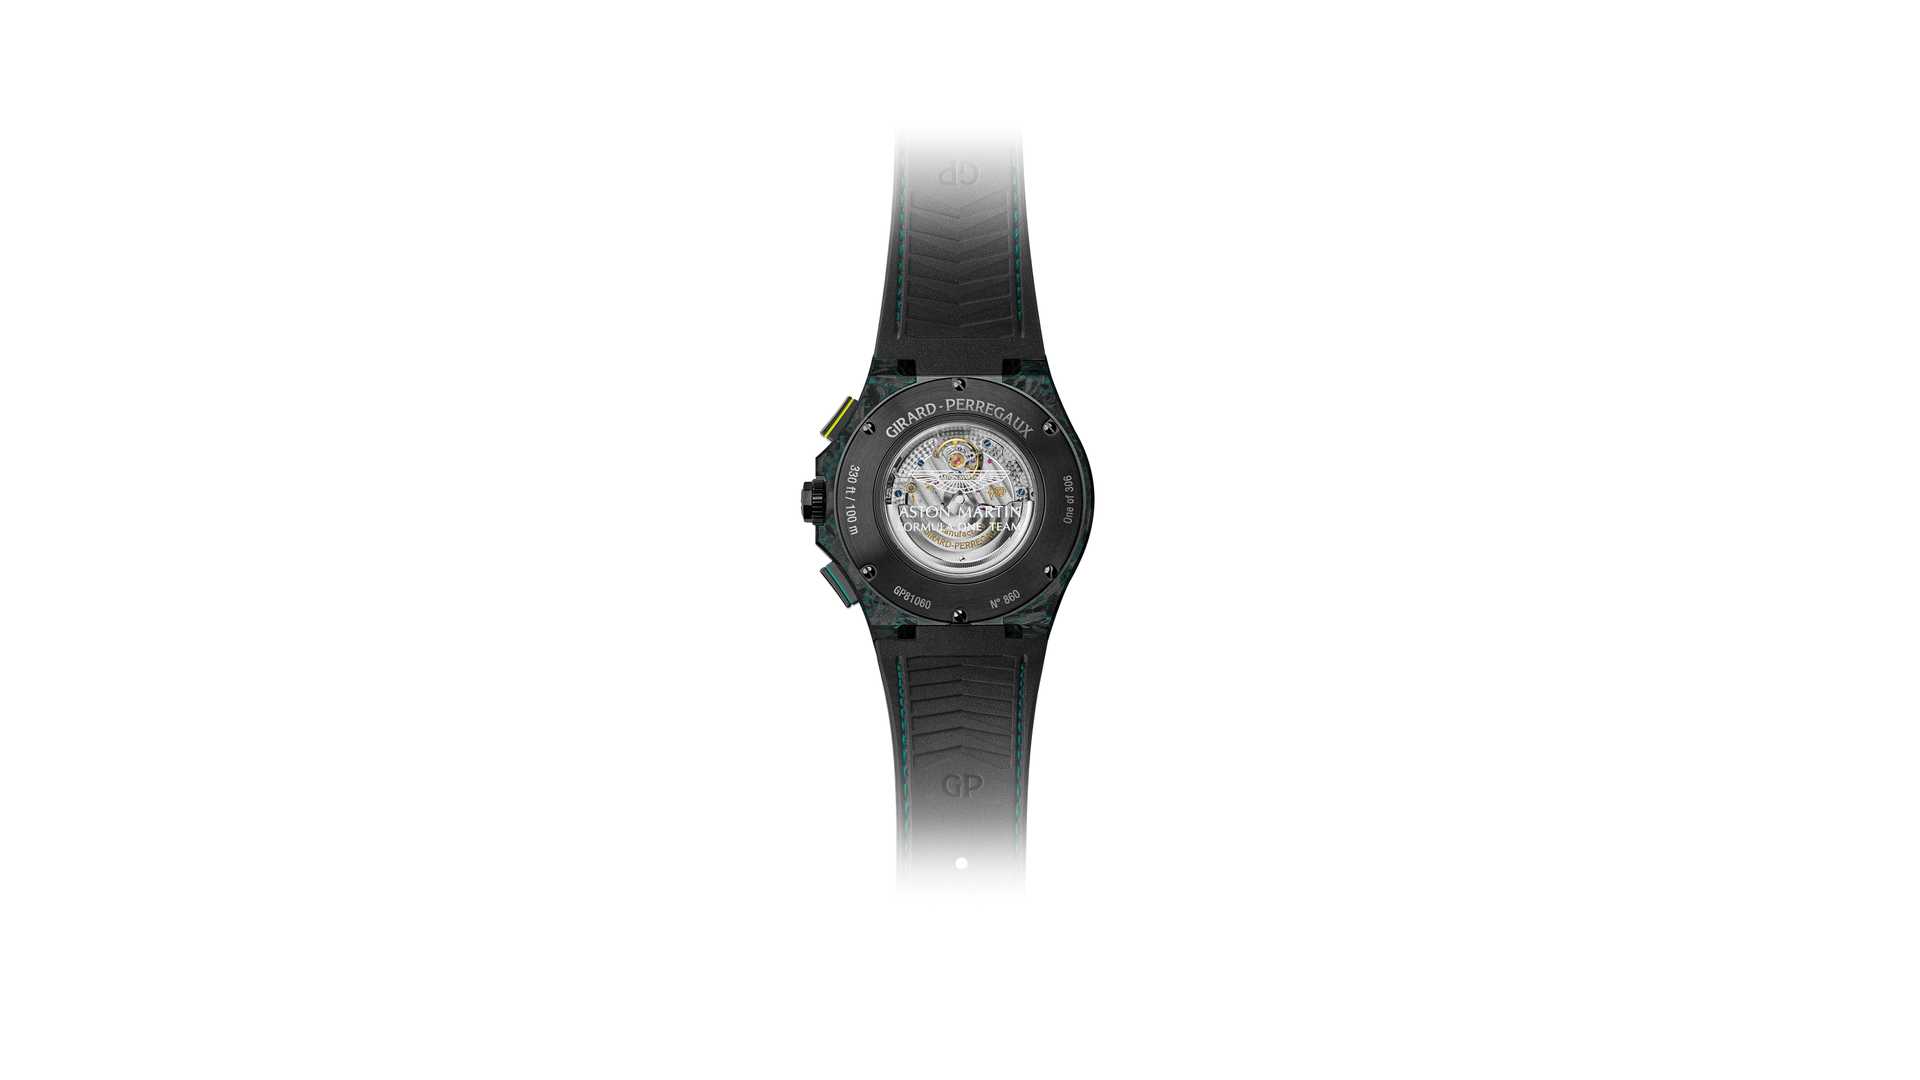 girard-perregaux-laureato-absolute-chronograph-aston-martin-f1-edition